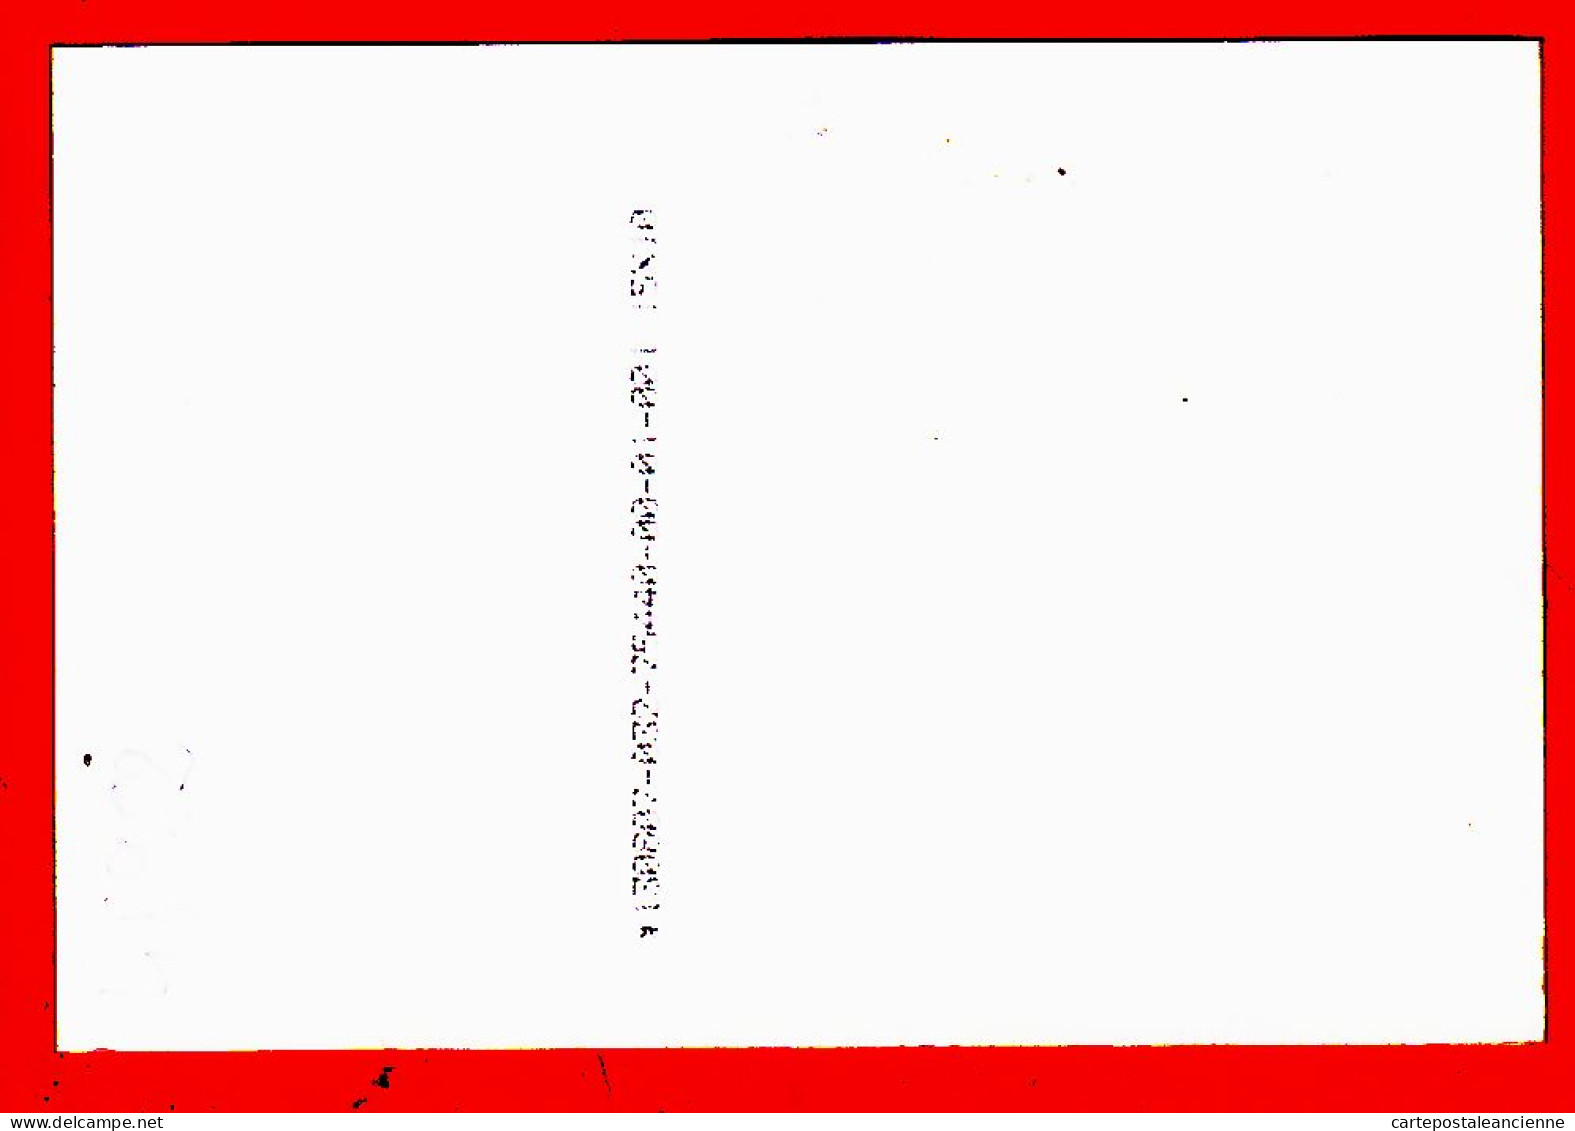 05236 ● SYLVIE VARTAN Dans Le Privé Moment De Lecture 1985s Photographie Sur Papier Fujifilm 10x15cm - Singers & Musicians